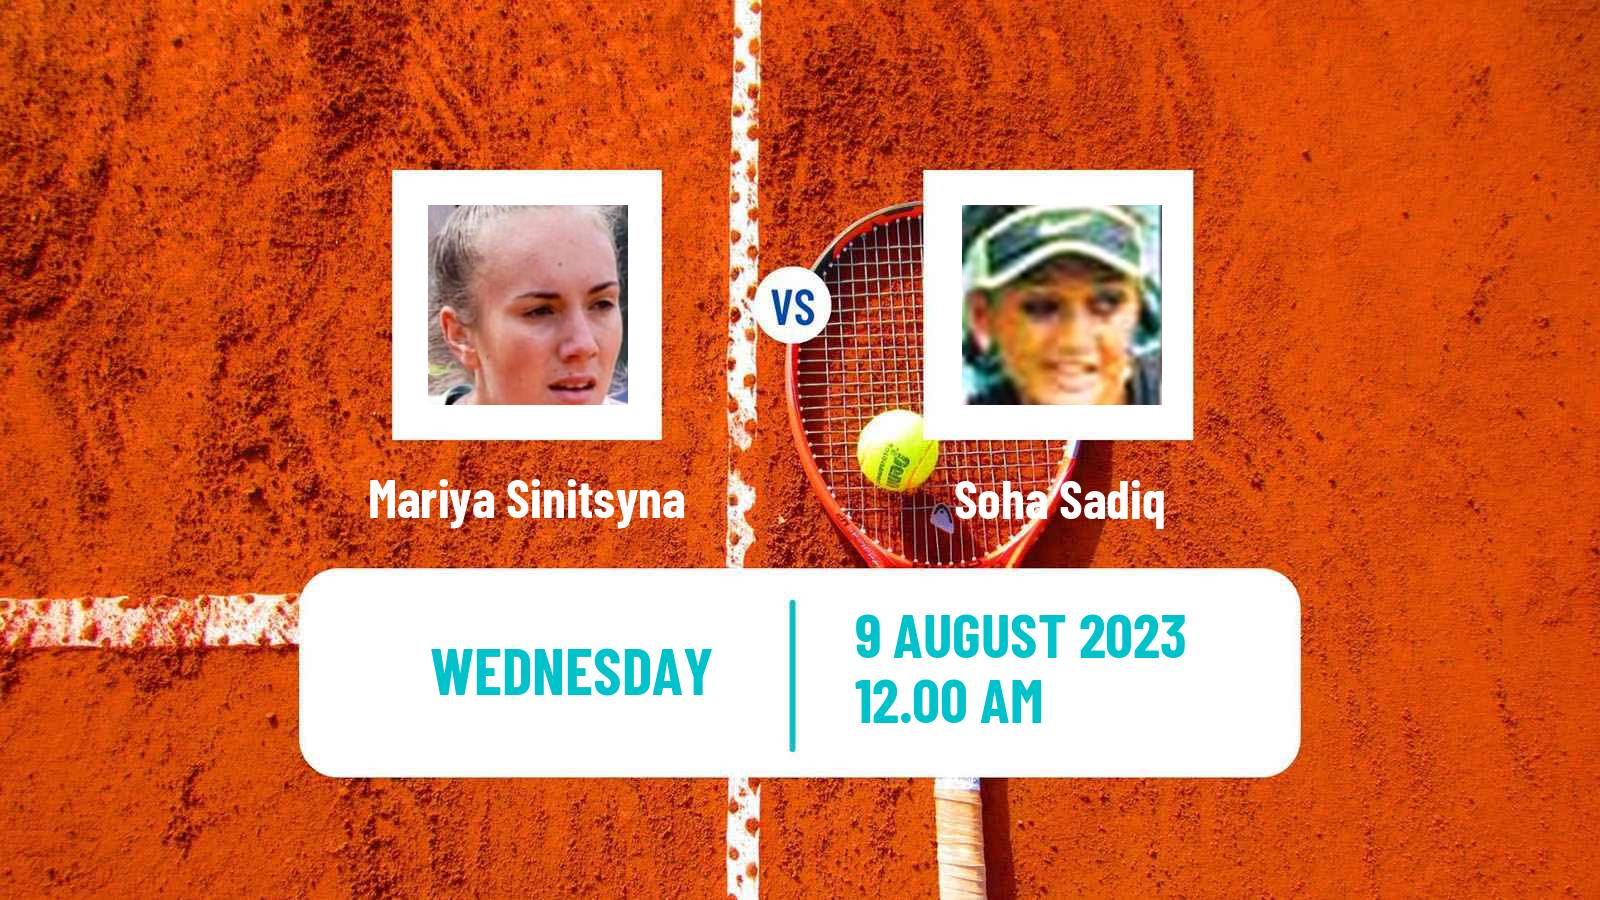 Tennis ITF W15 Ust Kamenogorsk Women Mariya Sinitsyna - Soha Sadiq